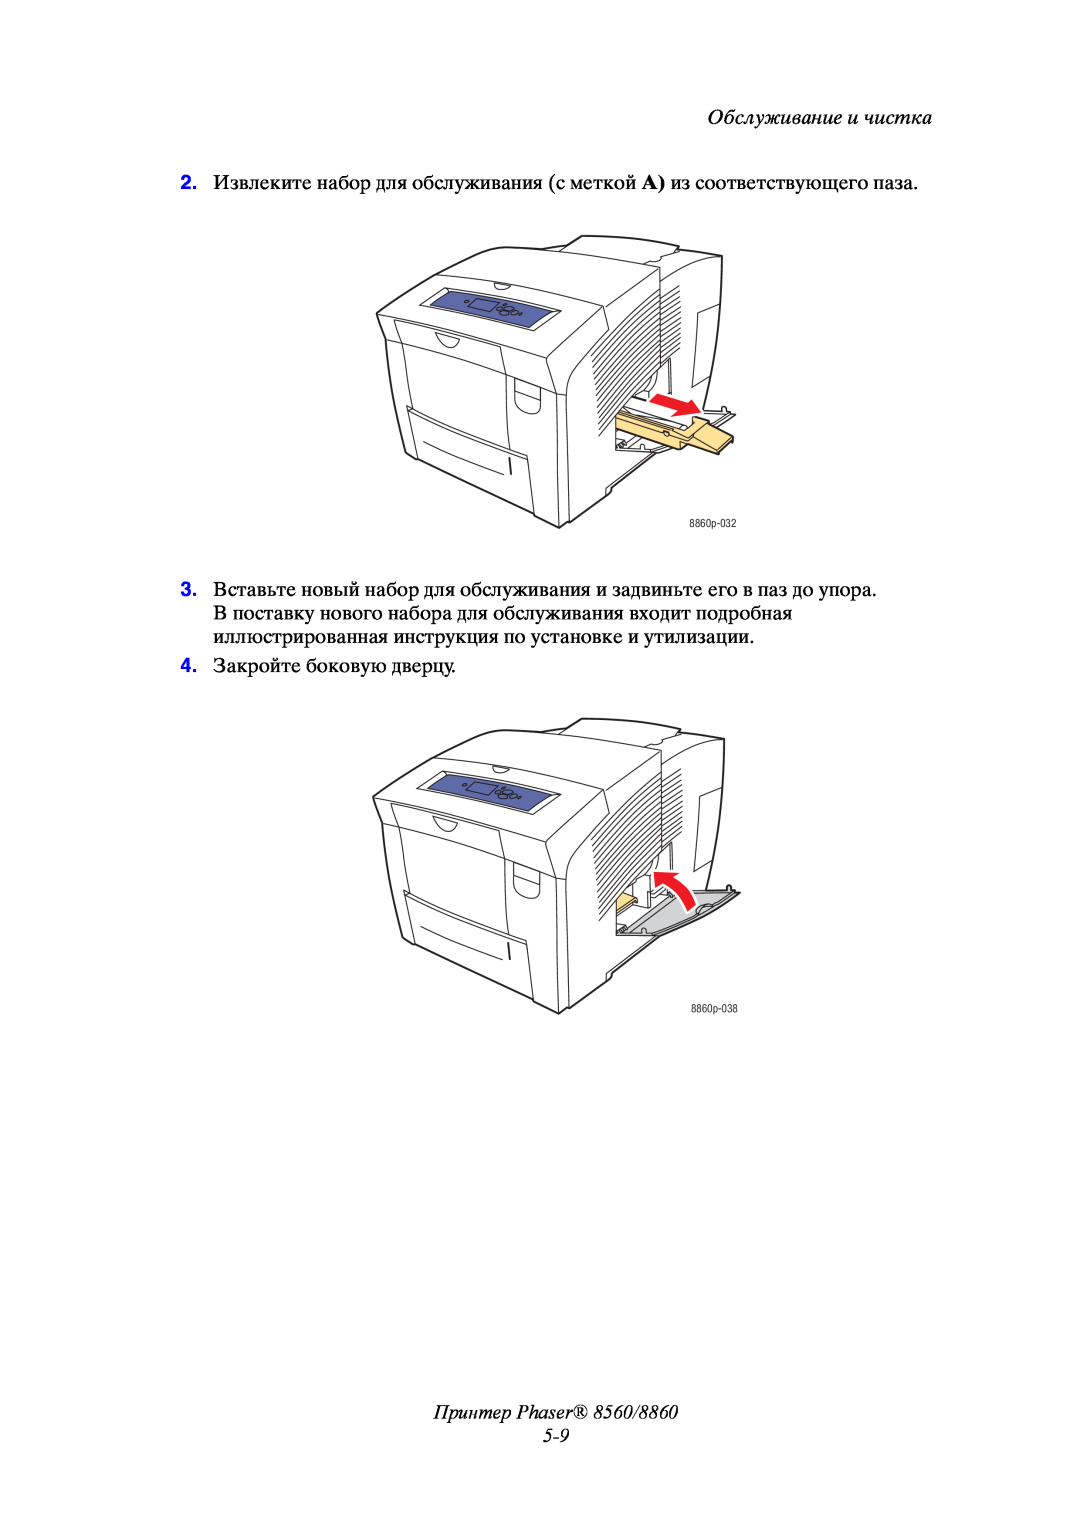 Xerox manual Принтер Phaser 8560/8860 5-9, Обслуживание и чистка, 4. Закройте боковую дверцу 